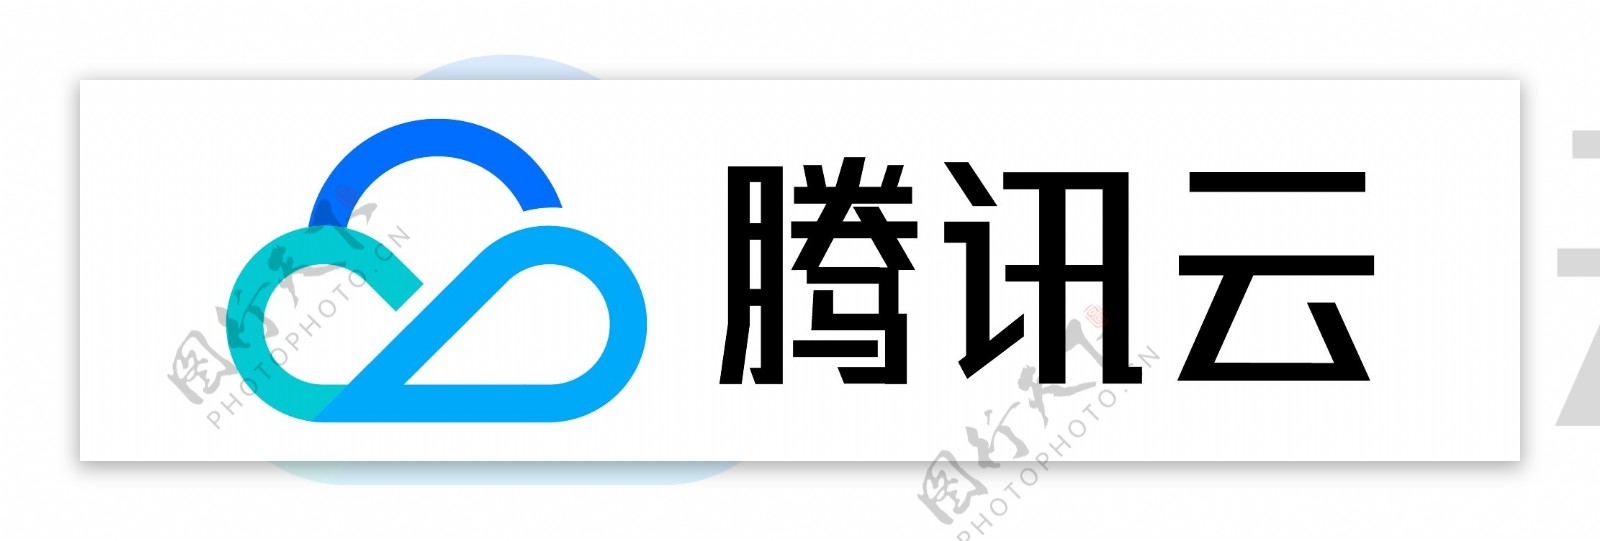 腾讯云logo